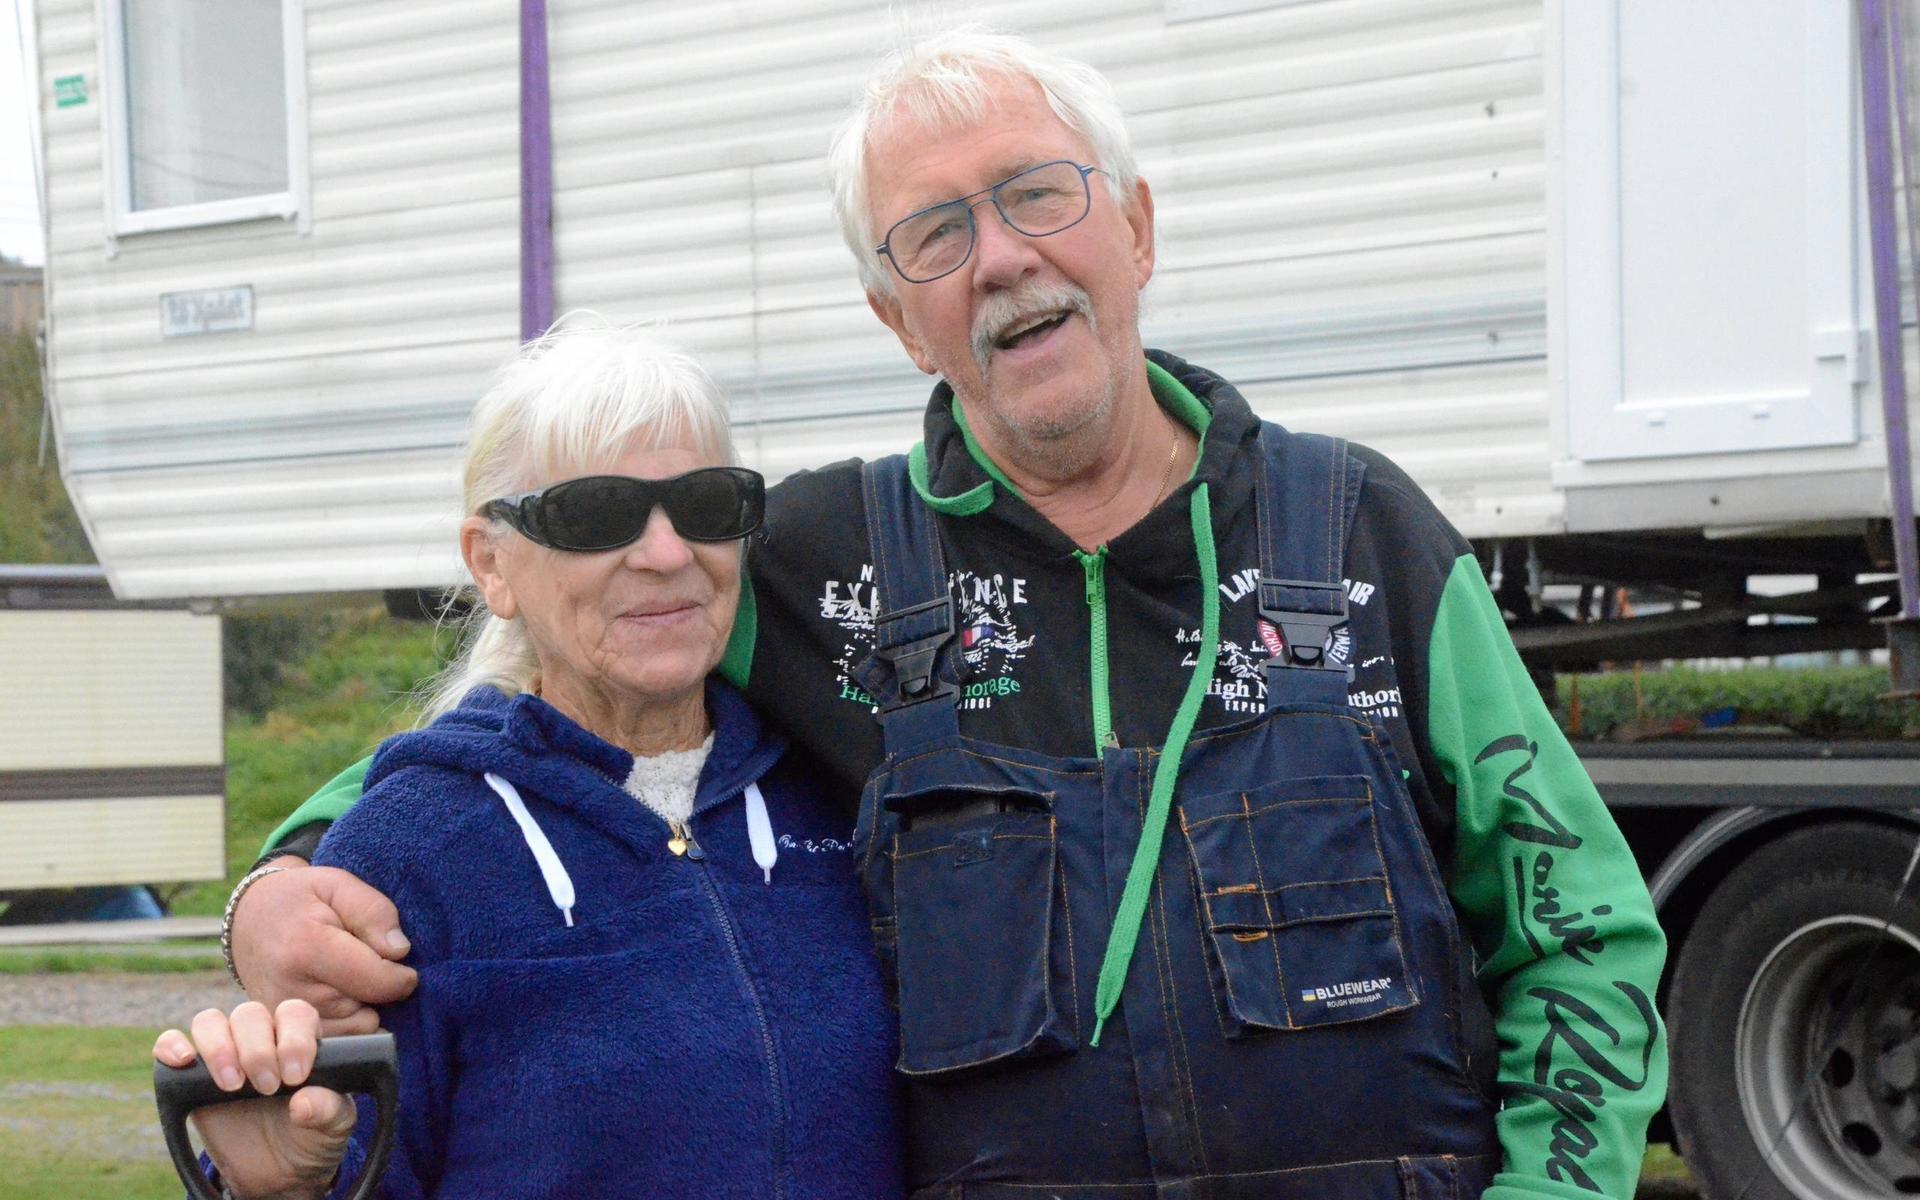 Inger och Rune Hansson har firat sin semester på campingen i Kärradal i 27 år. De senaste 20 i sin villavagn. ”I 19 år var det perfekt. Men sen förstördes allt”, säger Inger Hansson